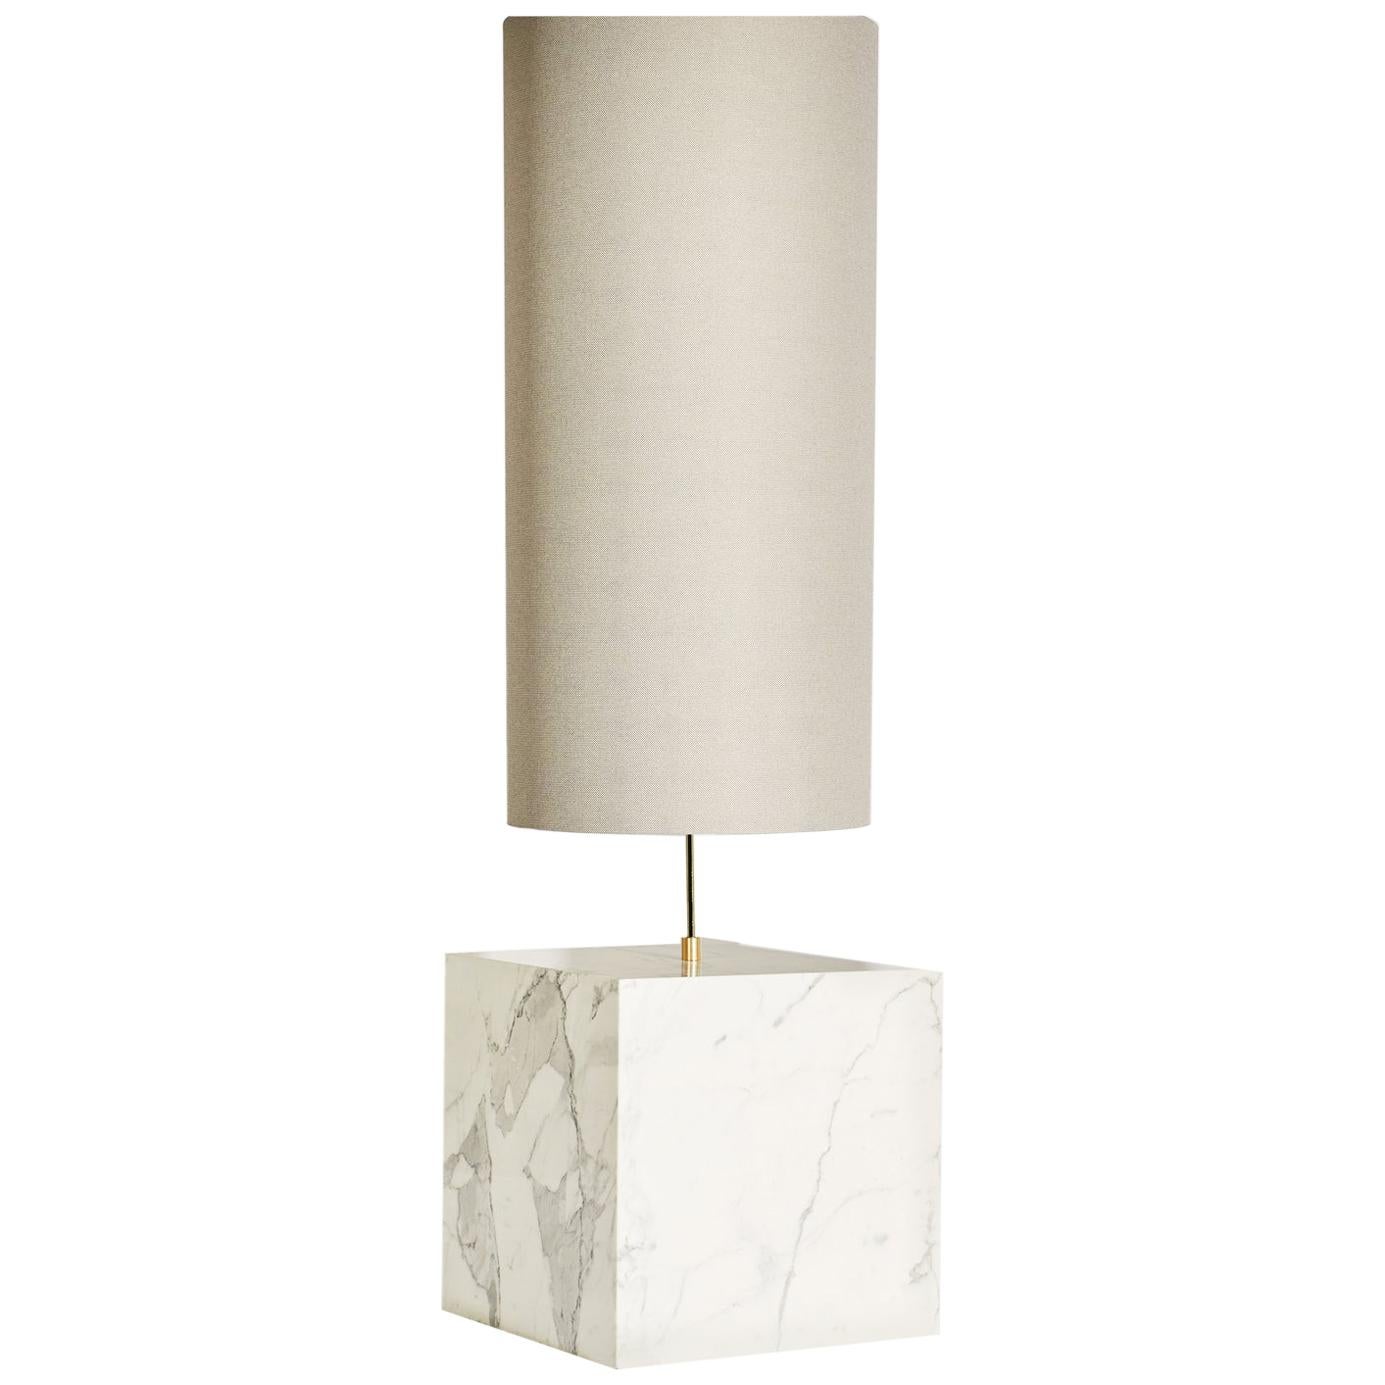 Le lampadaire Coexist se compose d'une base cubique en marbre et d'un abat-jour en tissu recyclé.

La lampe sert de pièce maîtresse sculpturale pour n'importe quelle pièce, émettant une lumière douce et chaude pour attirer le spectateur dans les